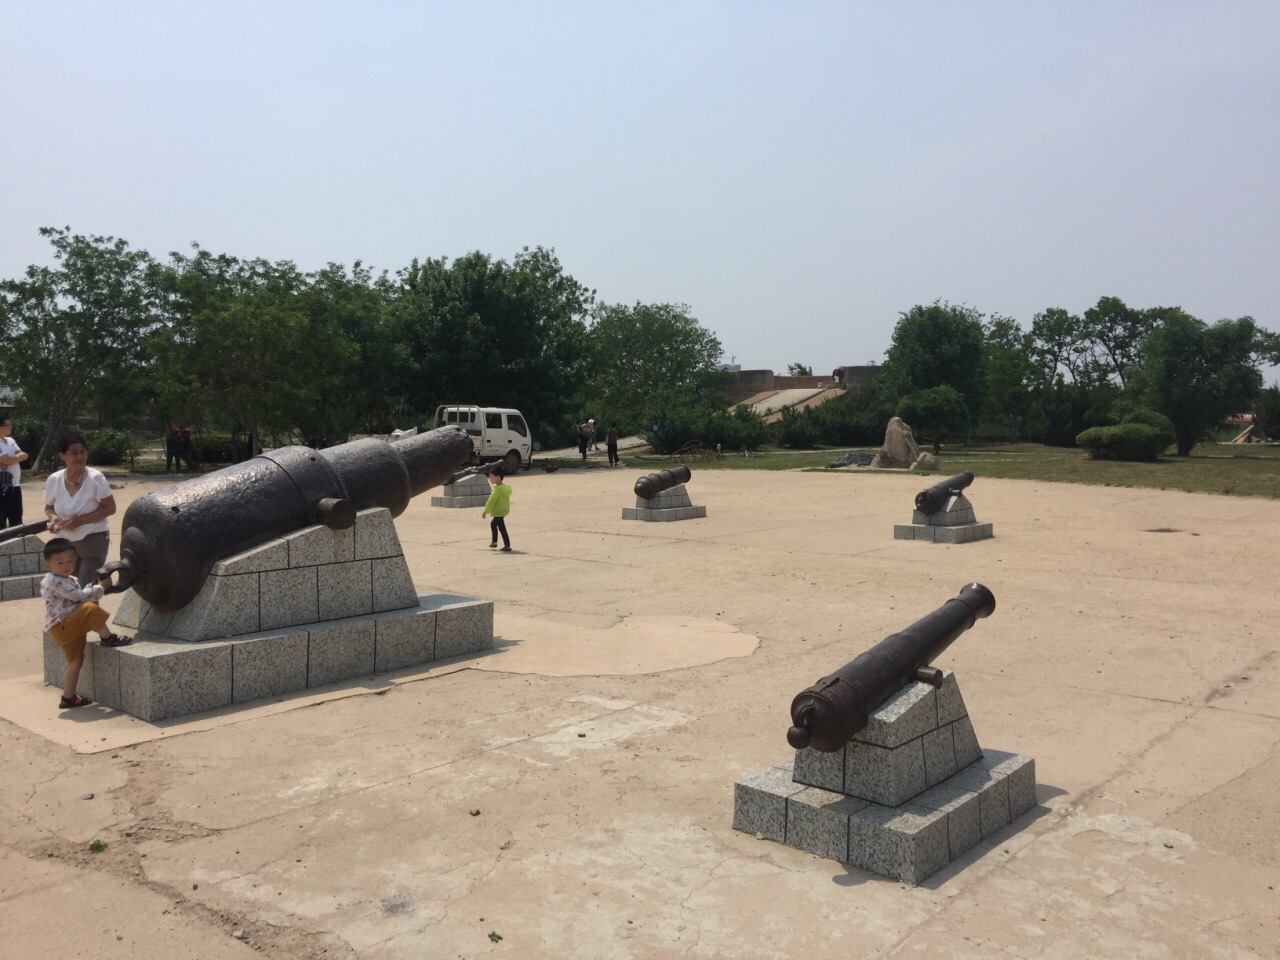 【携程攻略】营口西炮台公园景点,一处遗址性质的公园,曾是甲午战争时